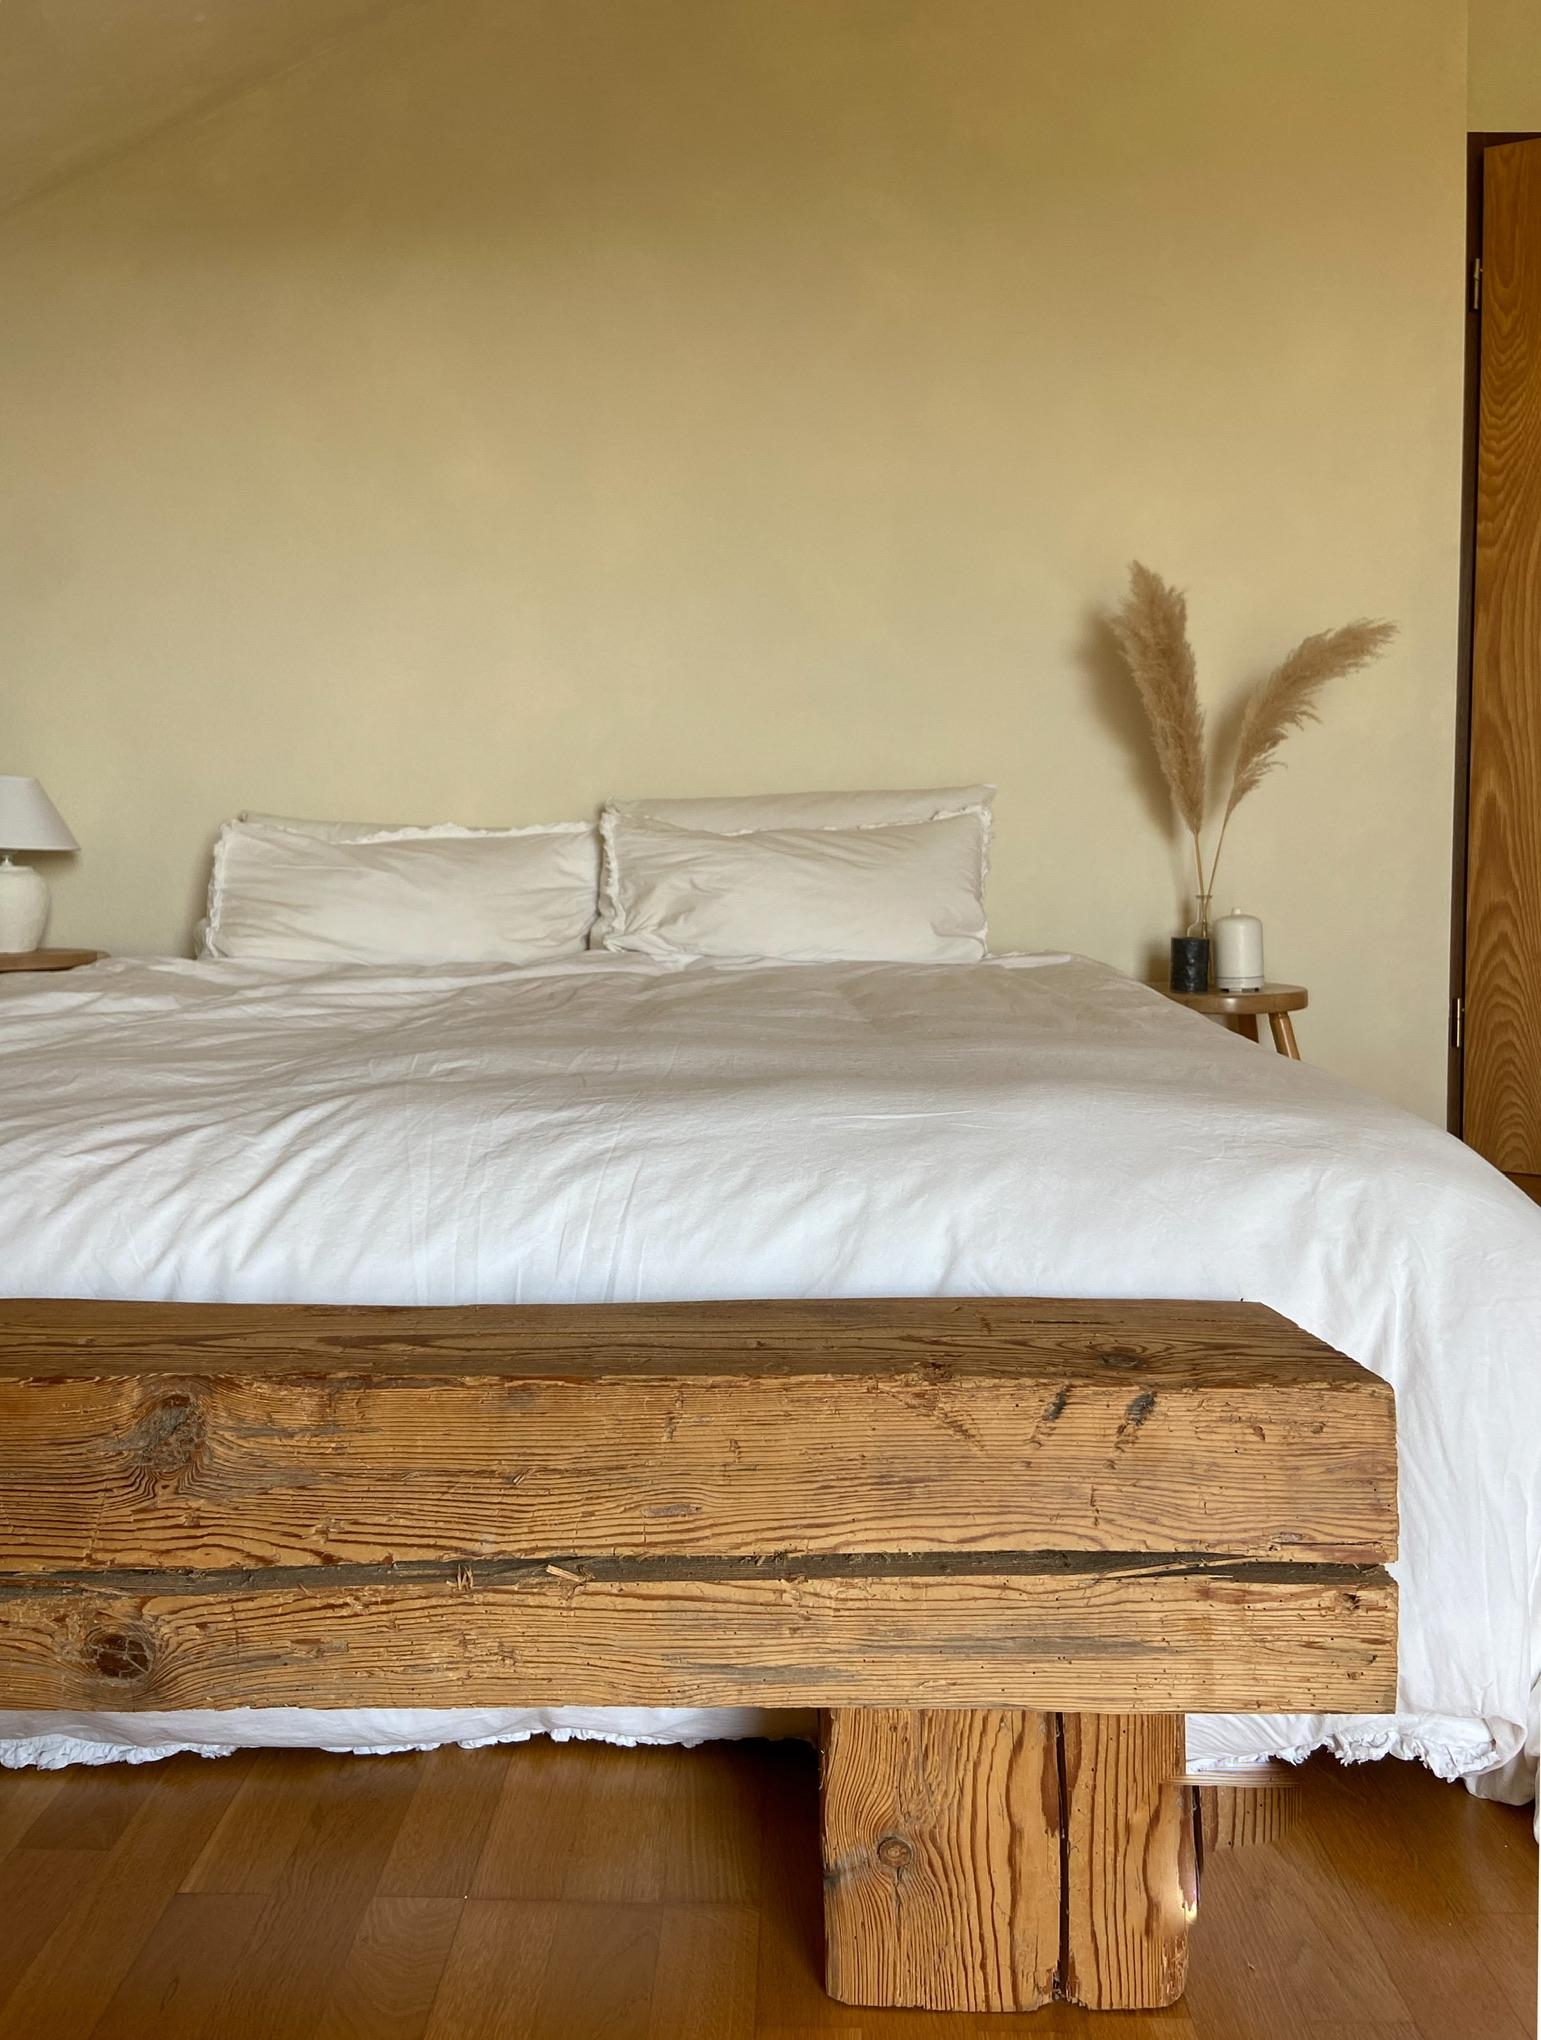 Bedroom breeze 🌬️
#bedroom #schlafzimmer #bett #leinenbettwäsche #pampasgrass #naturalinterior #wabisabi #wabisabiinterior #beachvibes #minimalistinterior #altholz #diy